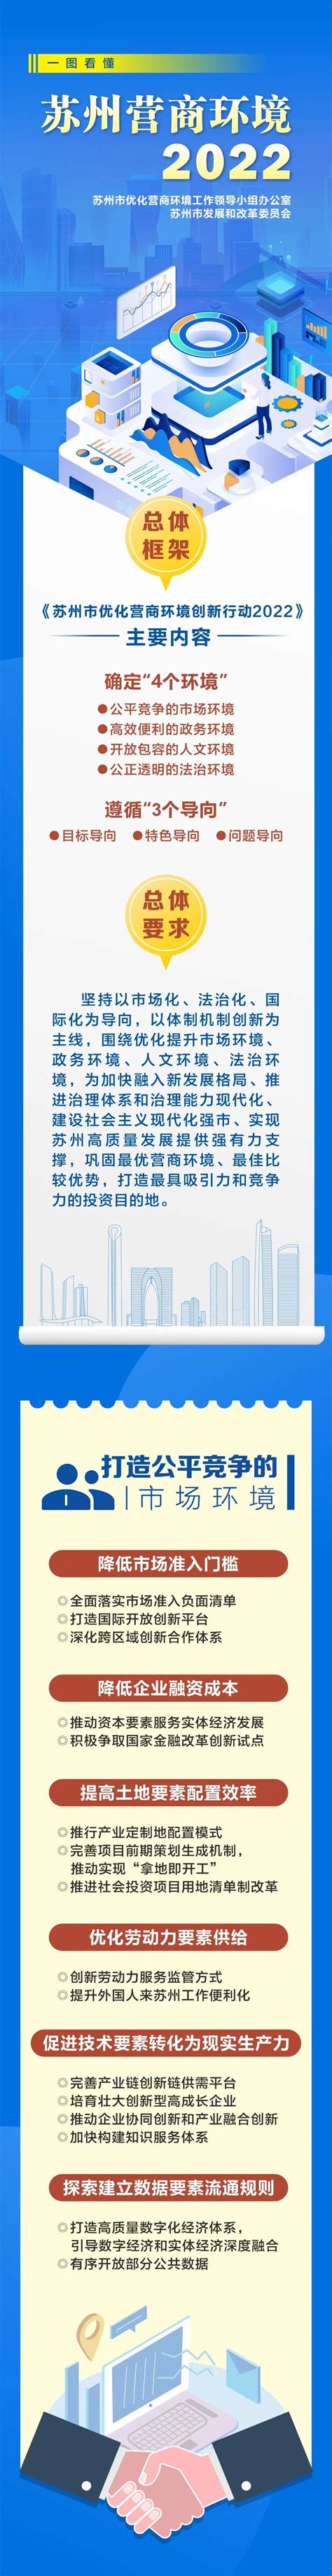 【一图了解《苏州市优化营商环境创新行动2022》】- 相城区惠企通服务平台